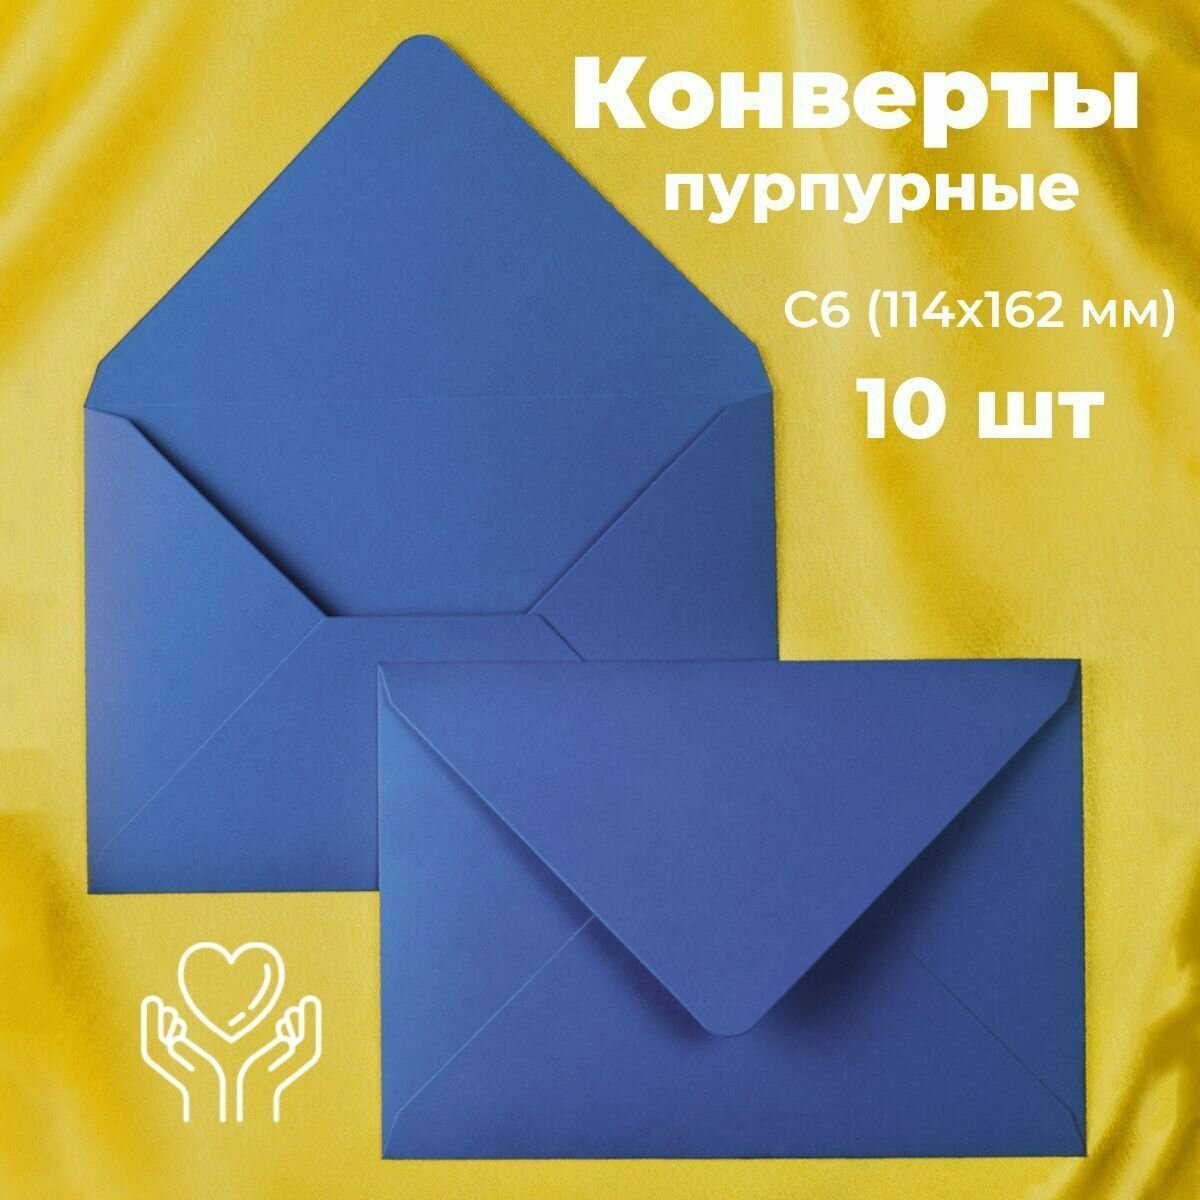 Пурпурные конверты бумажные для пригласительных, С6 114х162мм - набор 10 шт. цветные